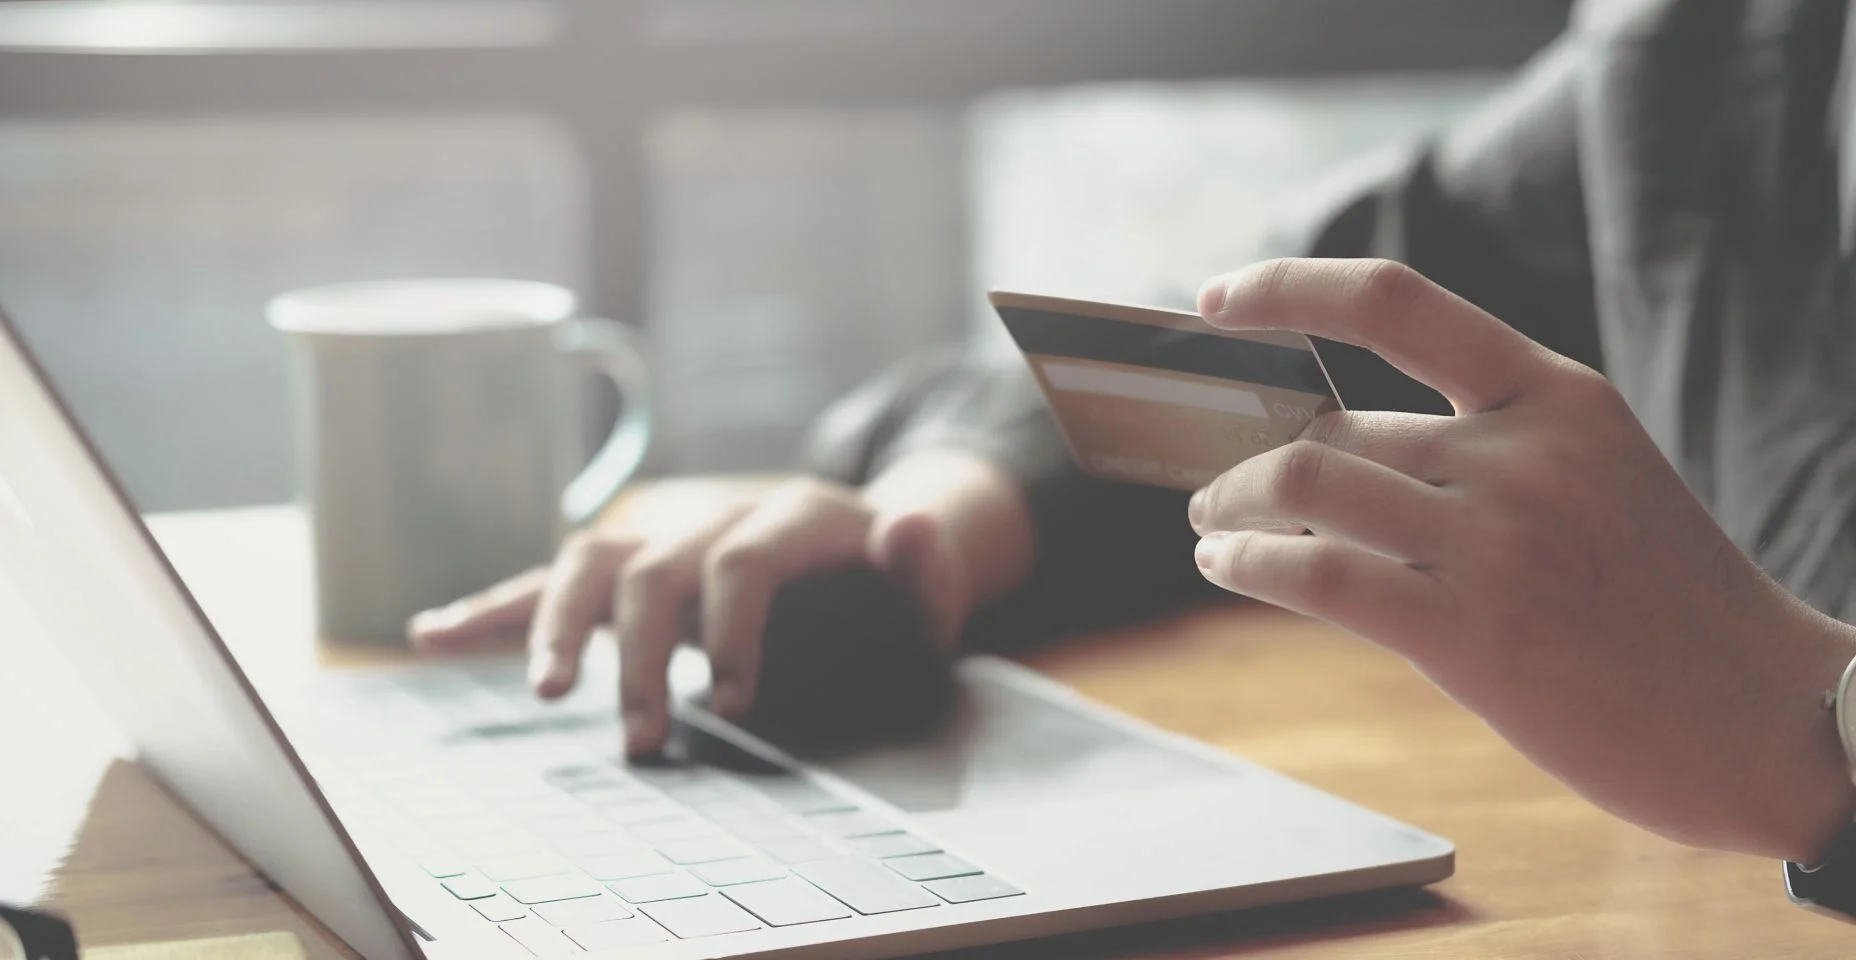 Pagamento online, mãos da mulher segurando um cartão de crédito e usando laptop para compras online.